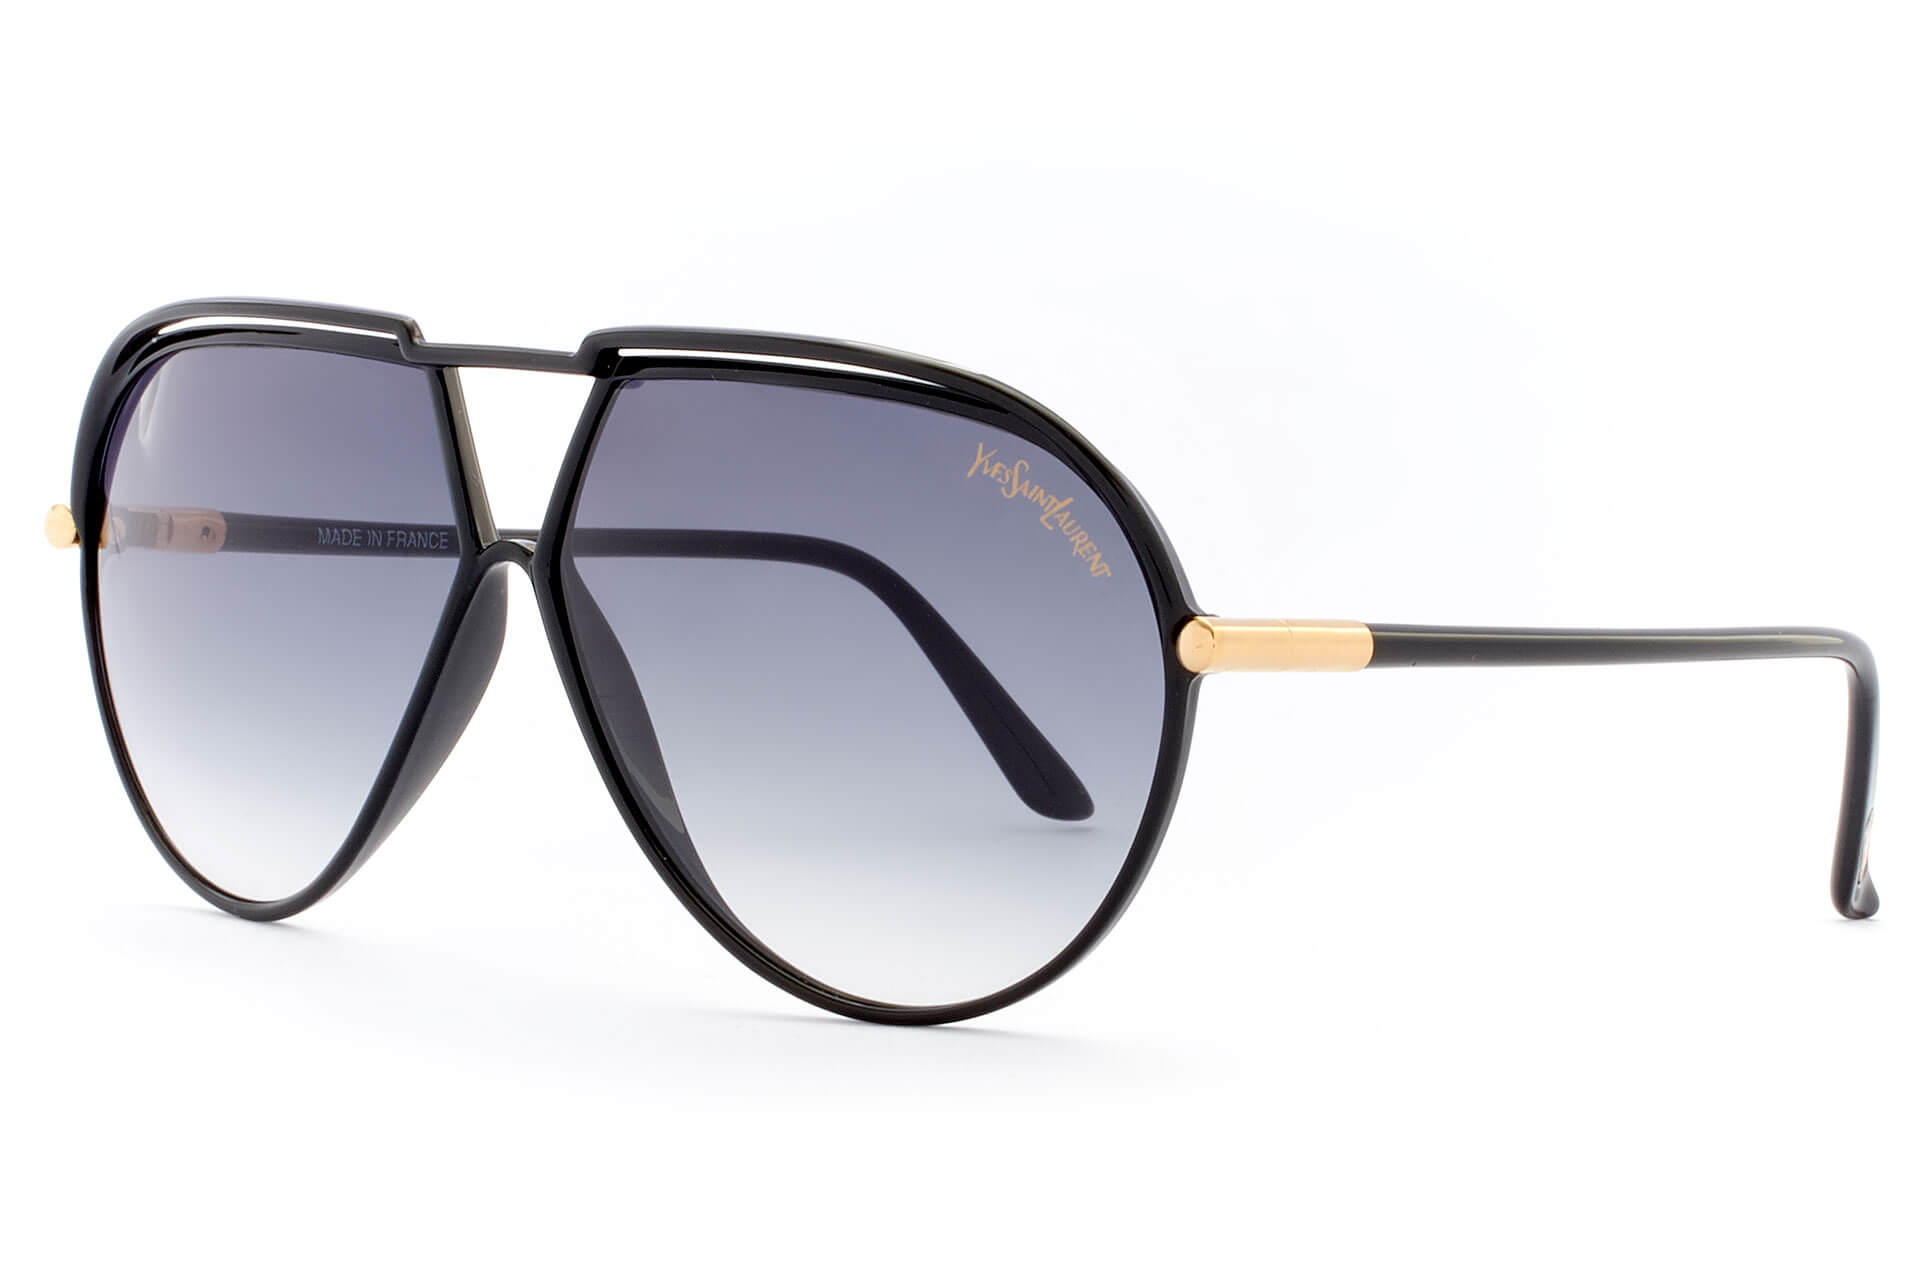 Saint Laurent Sunglasses Silver CLASSIC 11 SLIM-003 - The Optik Studio